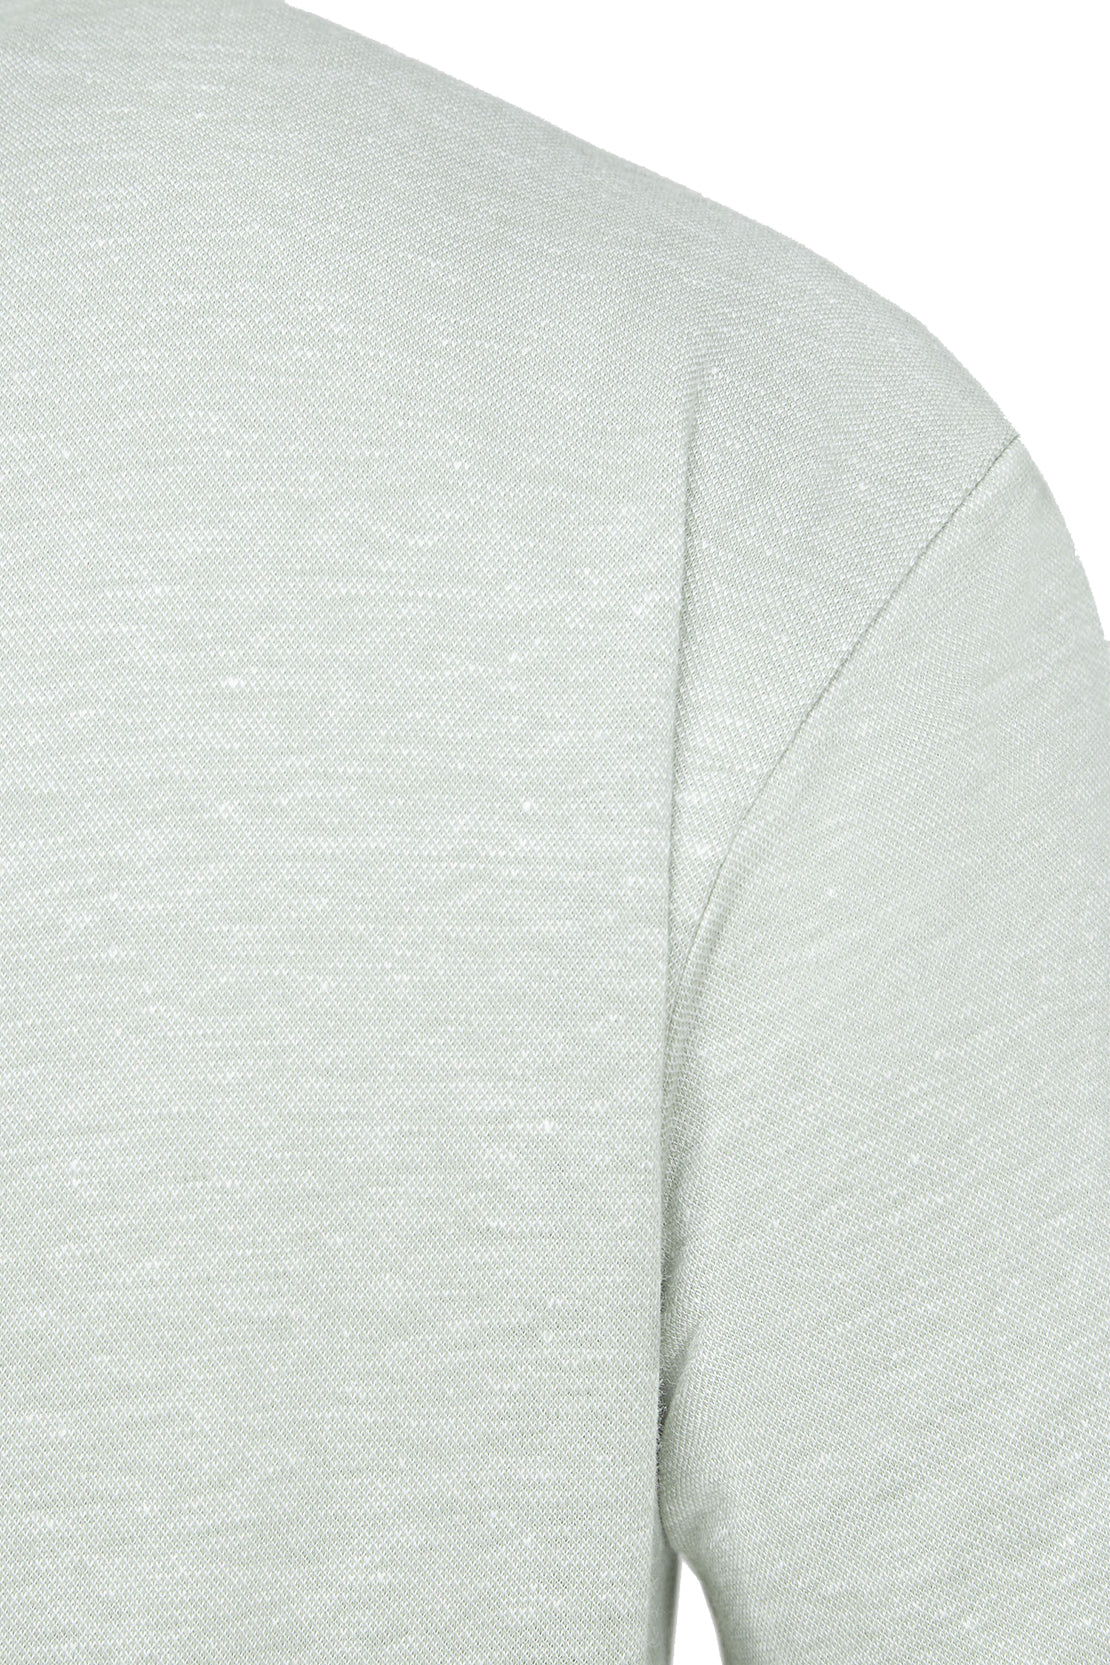 BOSS - PRESS 56 Light Green Regular Fit Cotton and Linen Polo Shirt 50511600 373